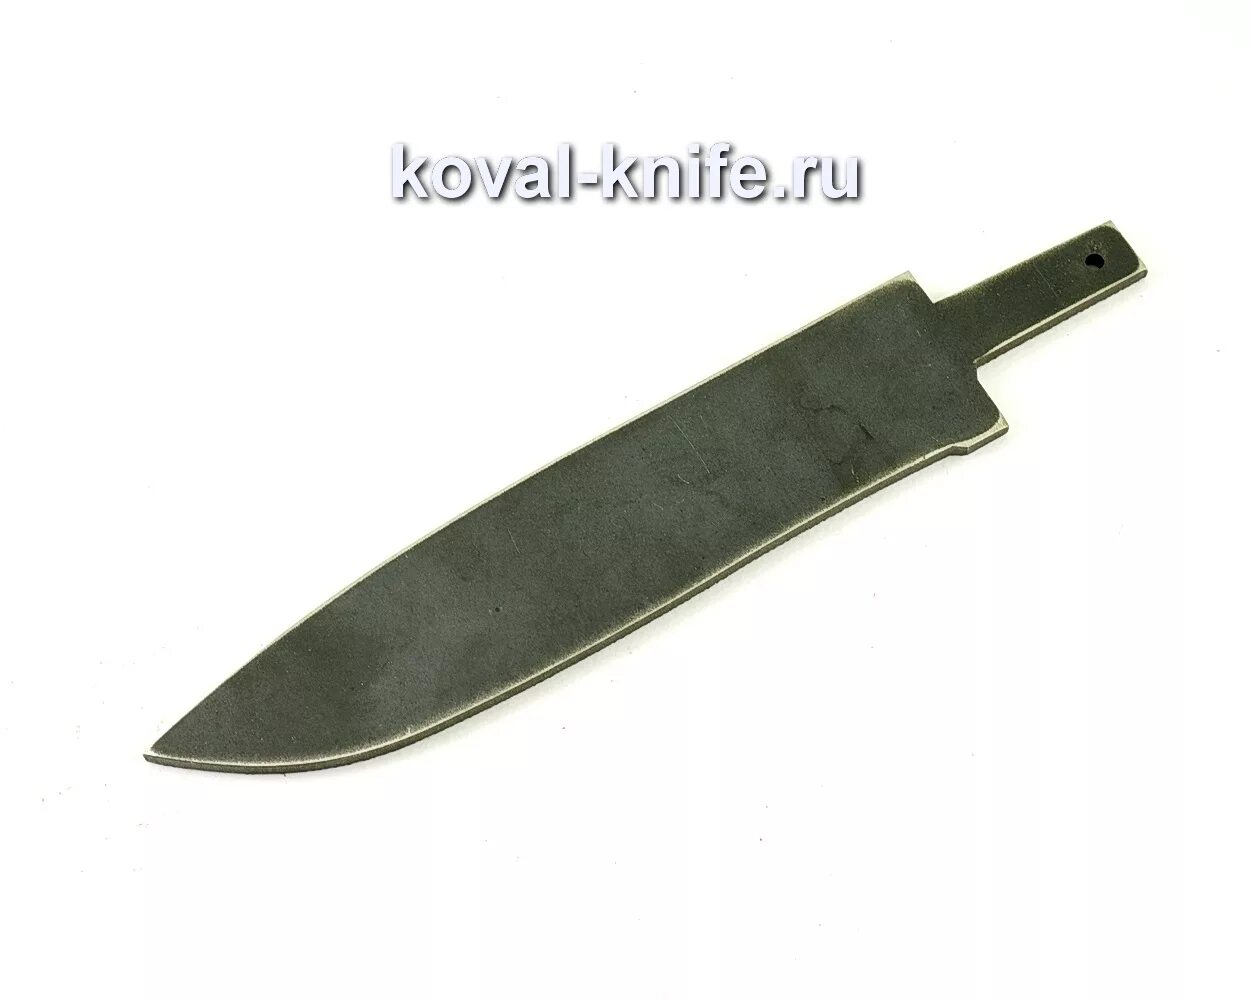 Клинки для ножей Bohler s390. Сталь m390 для ножей характеристики. Заготовки для ножей Bohler s390. Клинок для ножа с 390.